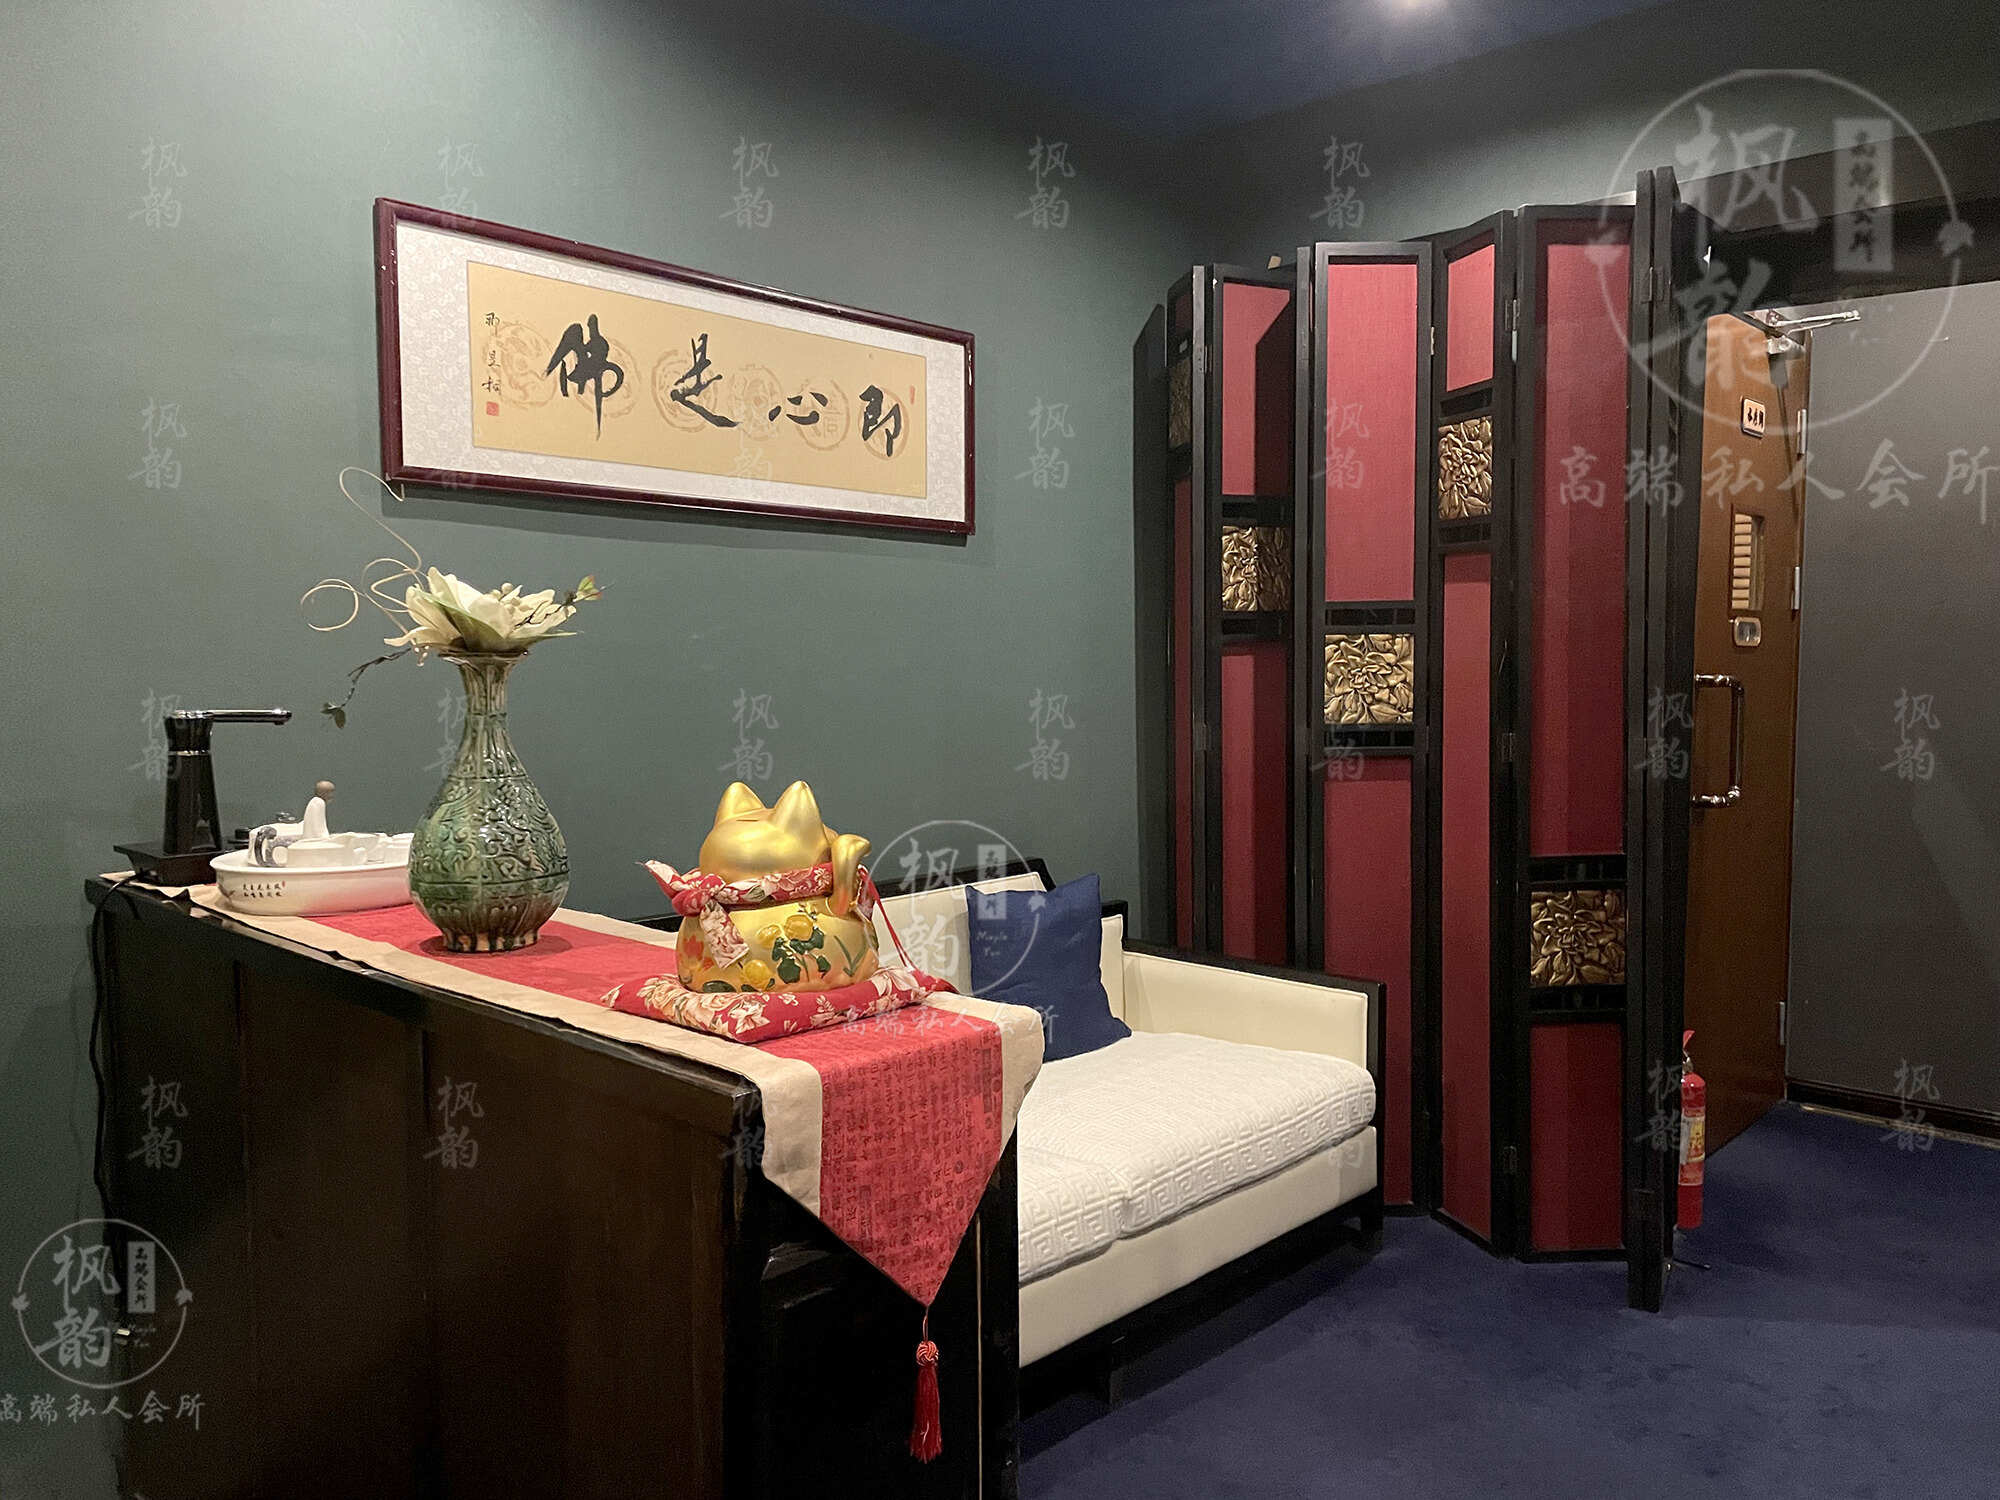 上海浦东区休闲足浴会所,让来的人，除了满意还是满意